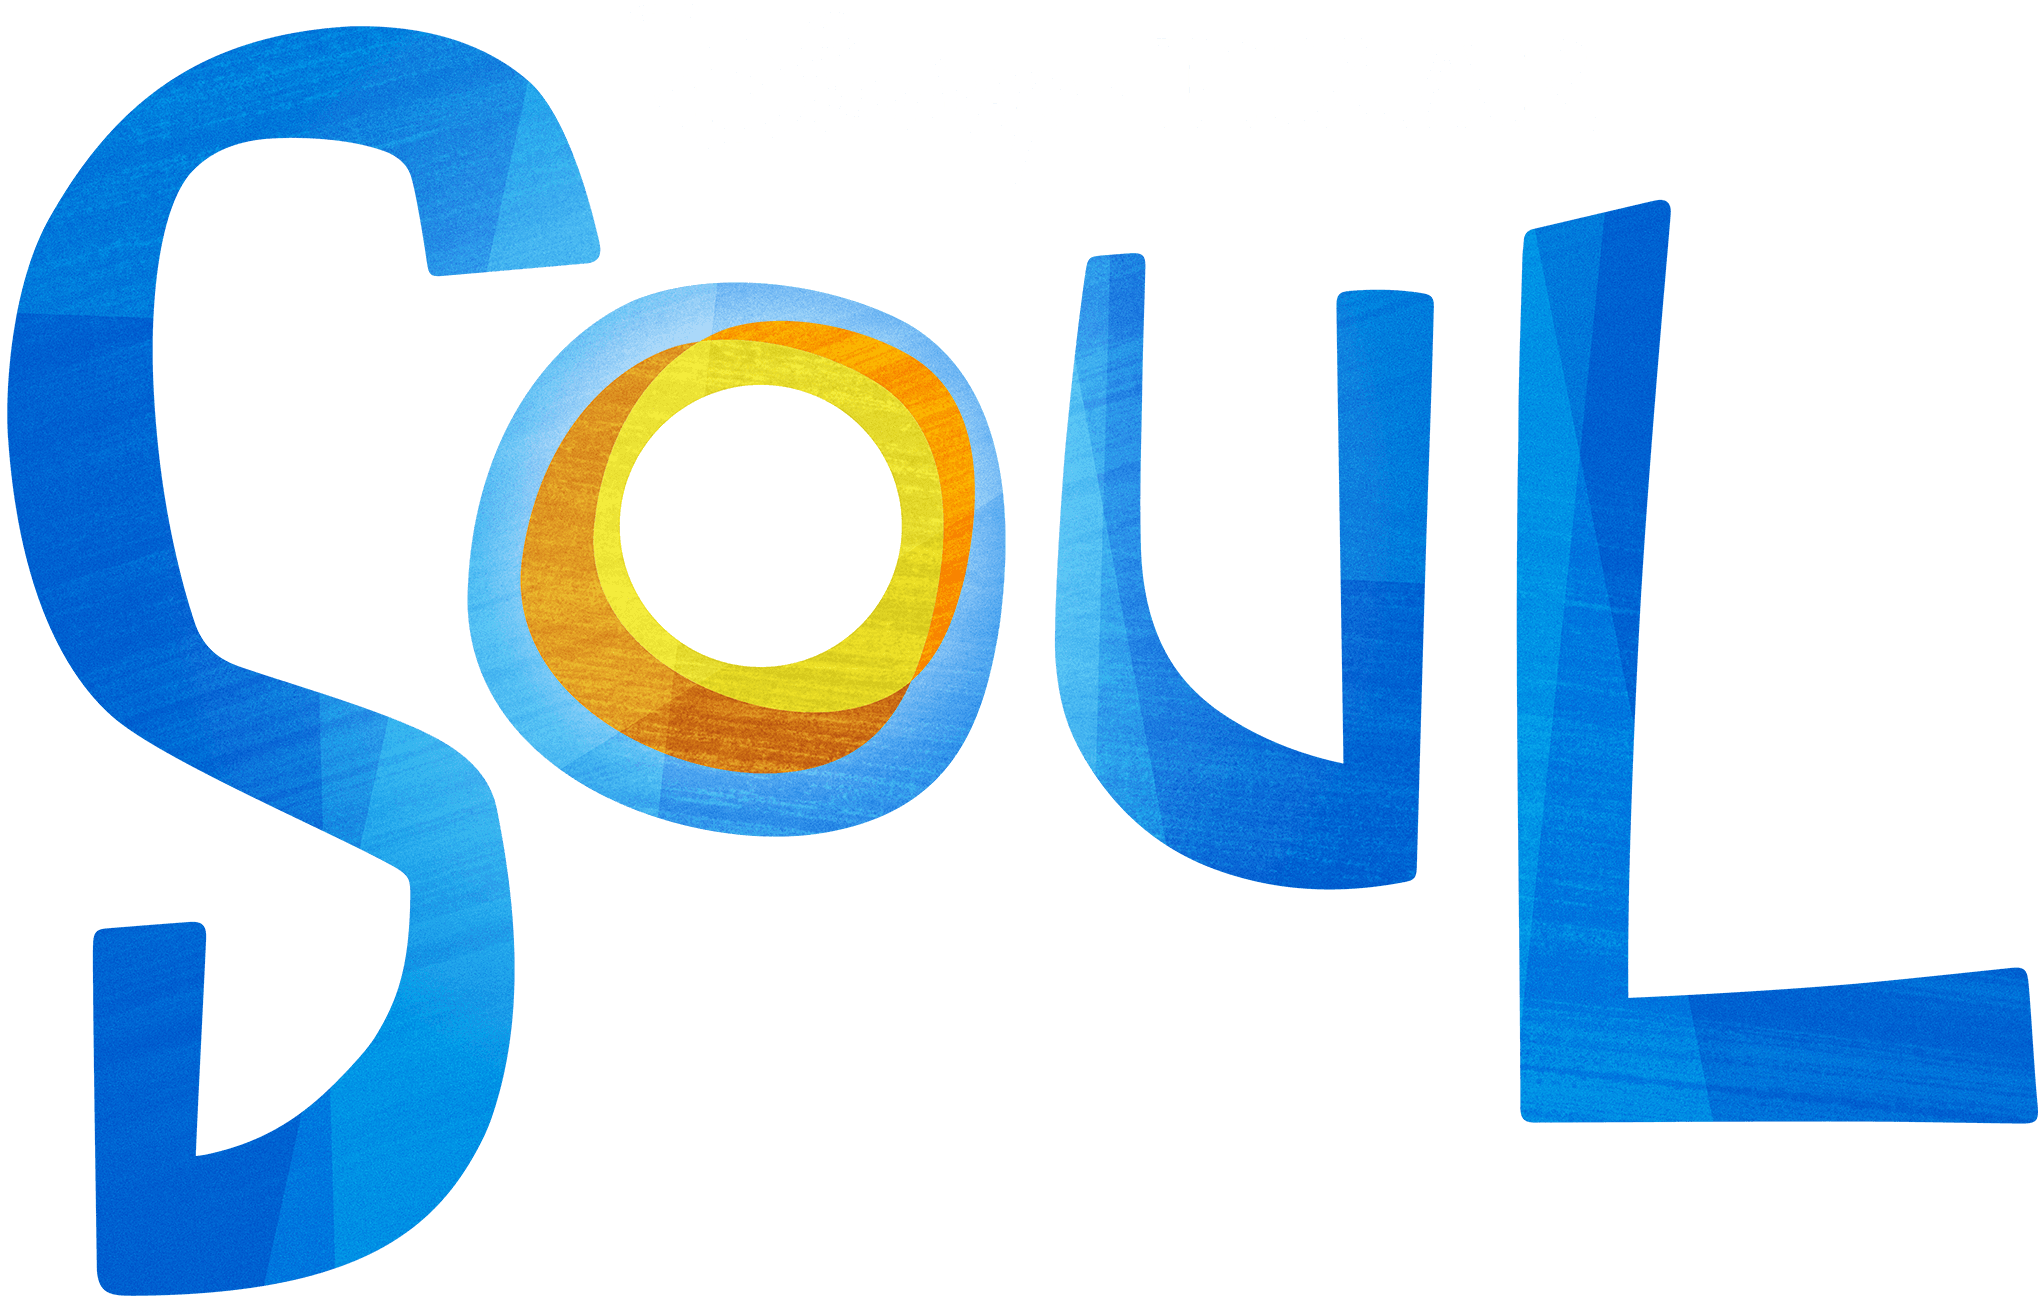 Soul logo